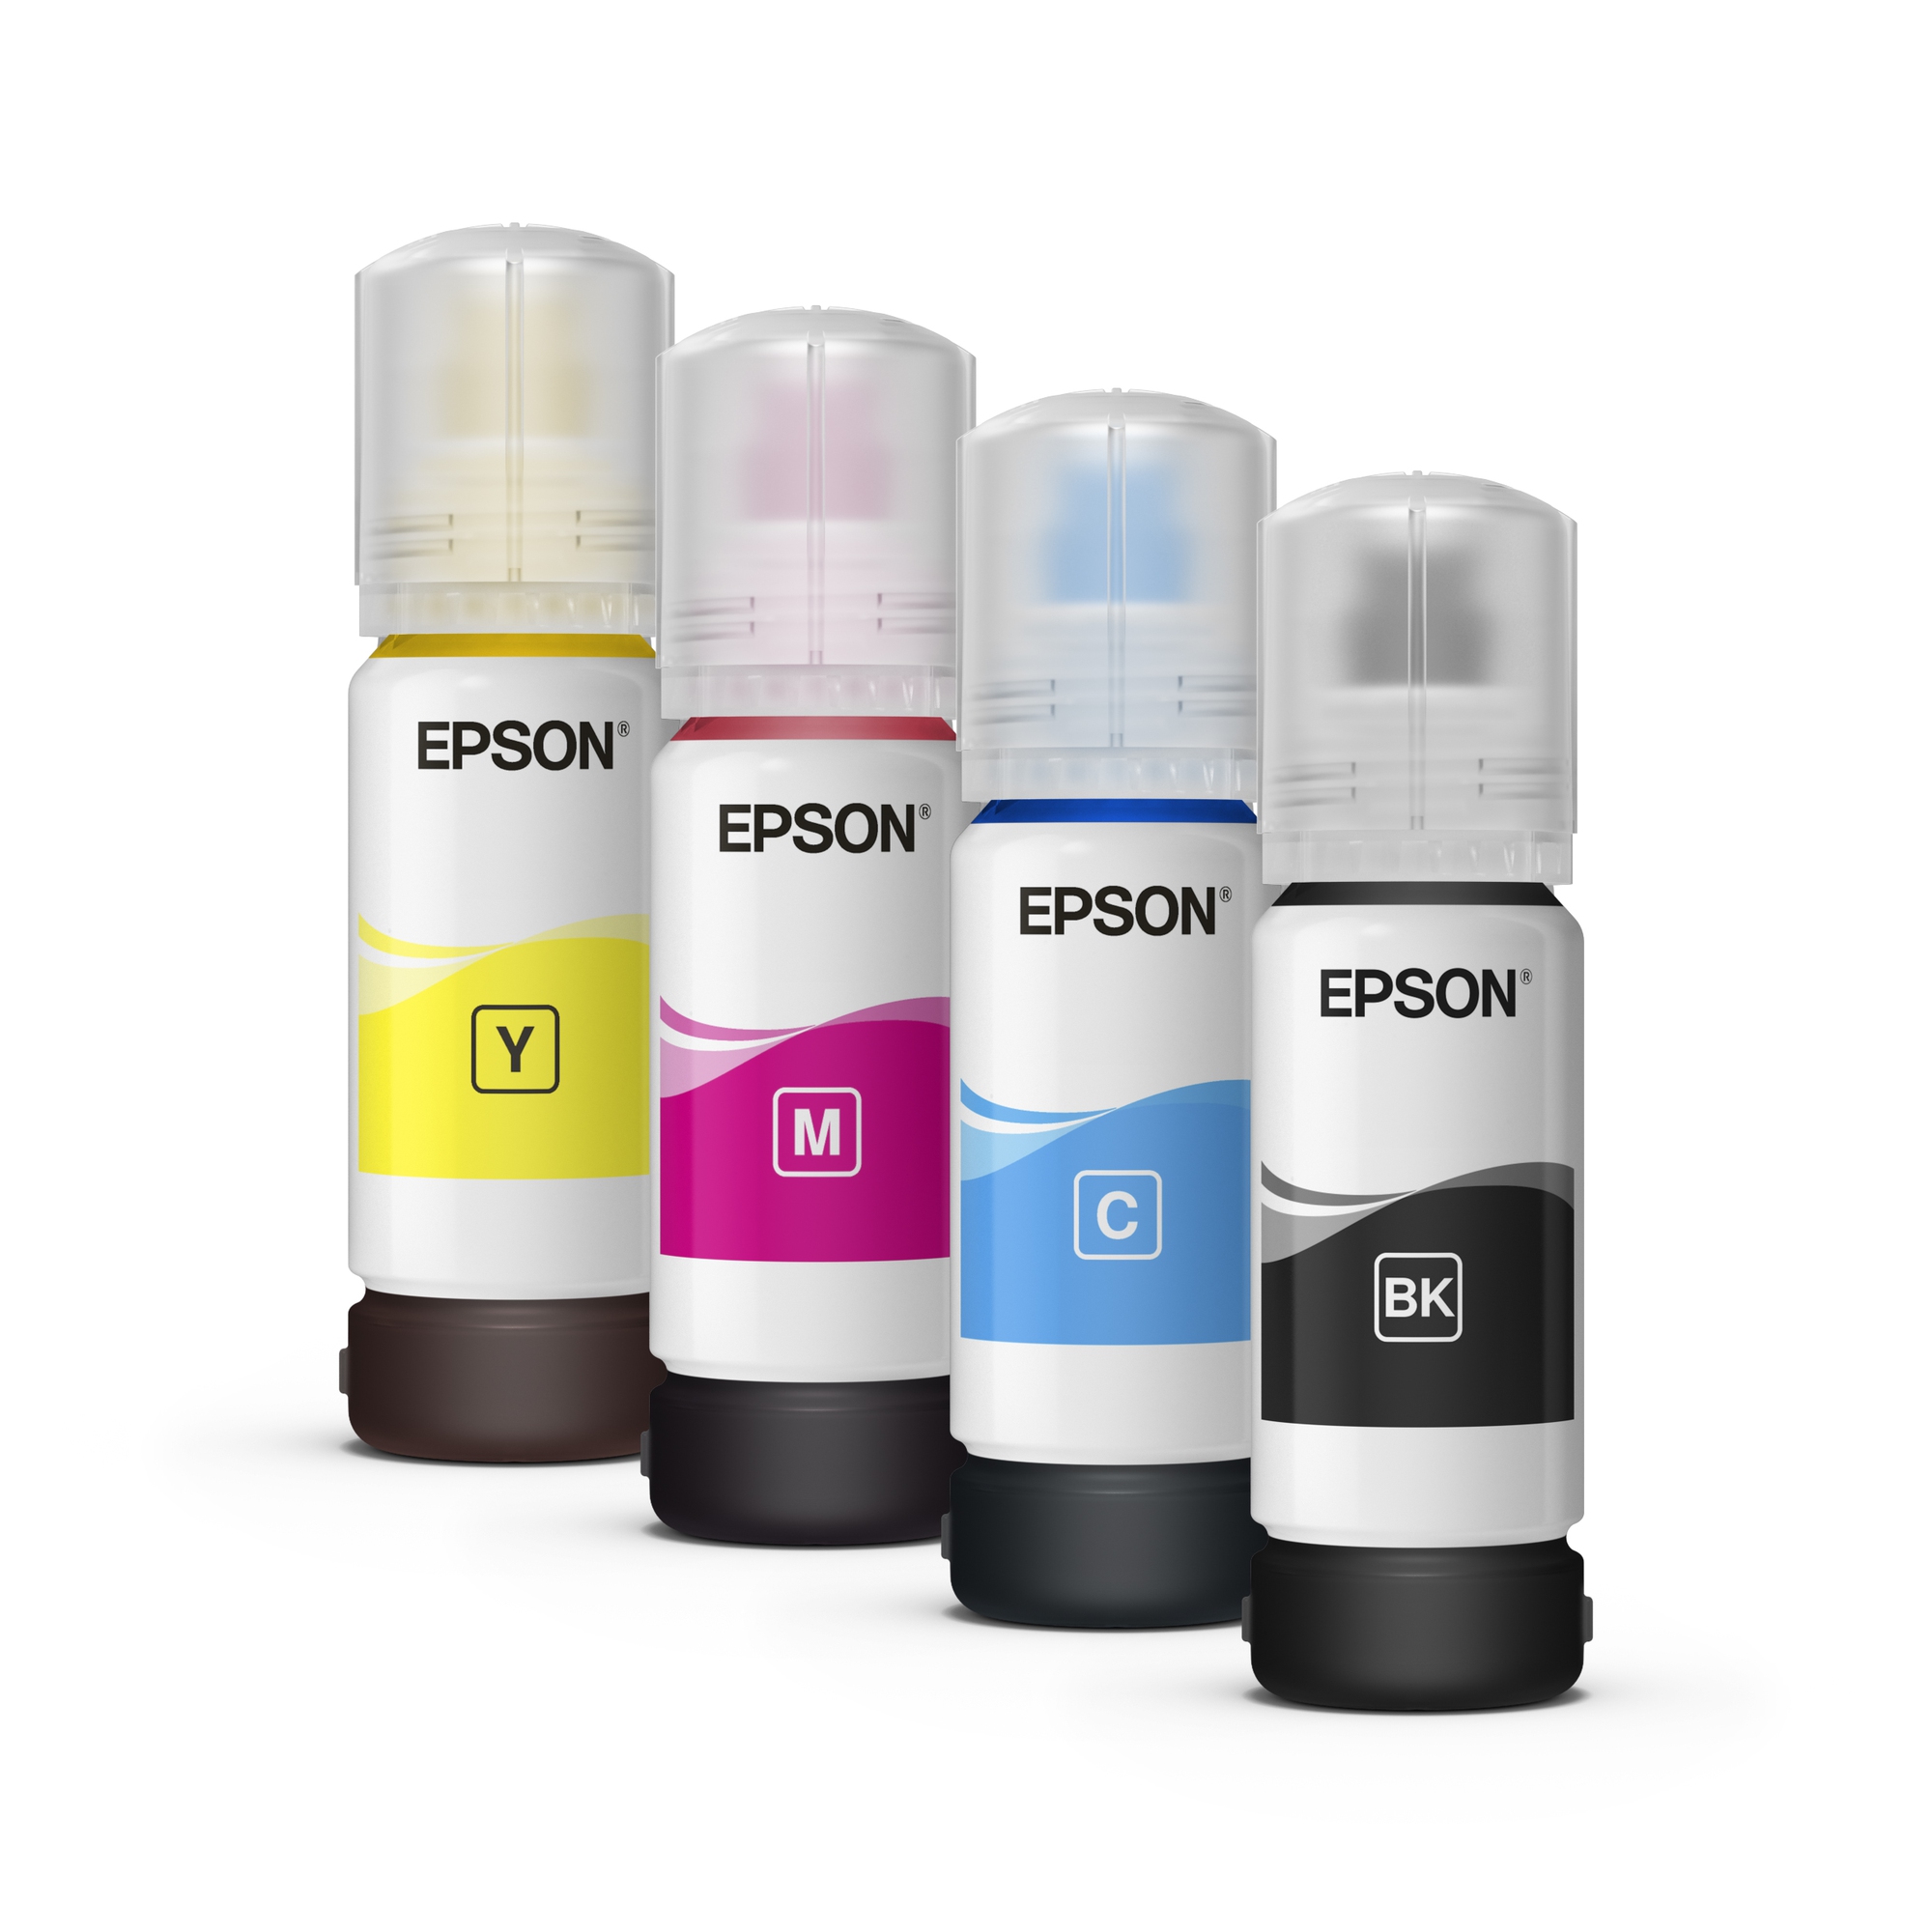 Đột phá công nghệ In Không Nhiệt, Epson EcoTank là lựa chọn hàng đầu khi in màu - Ảnh 3.